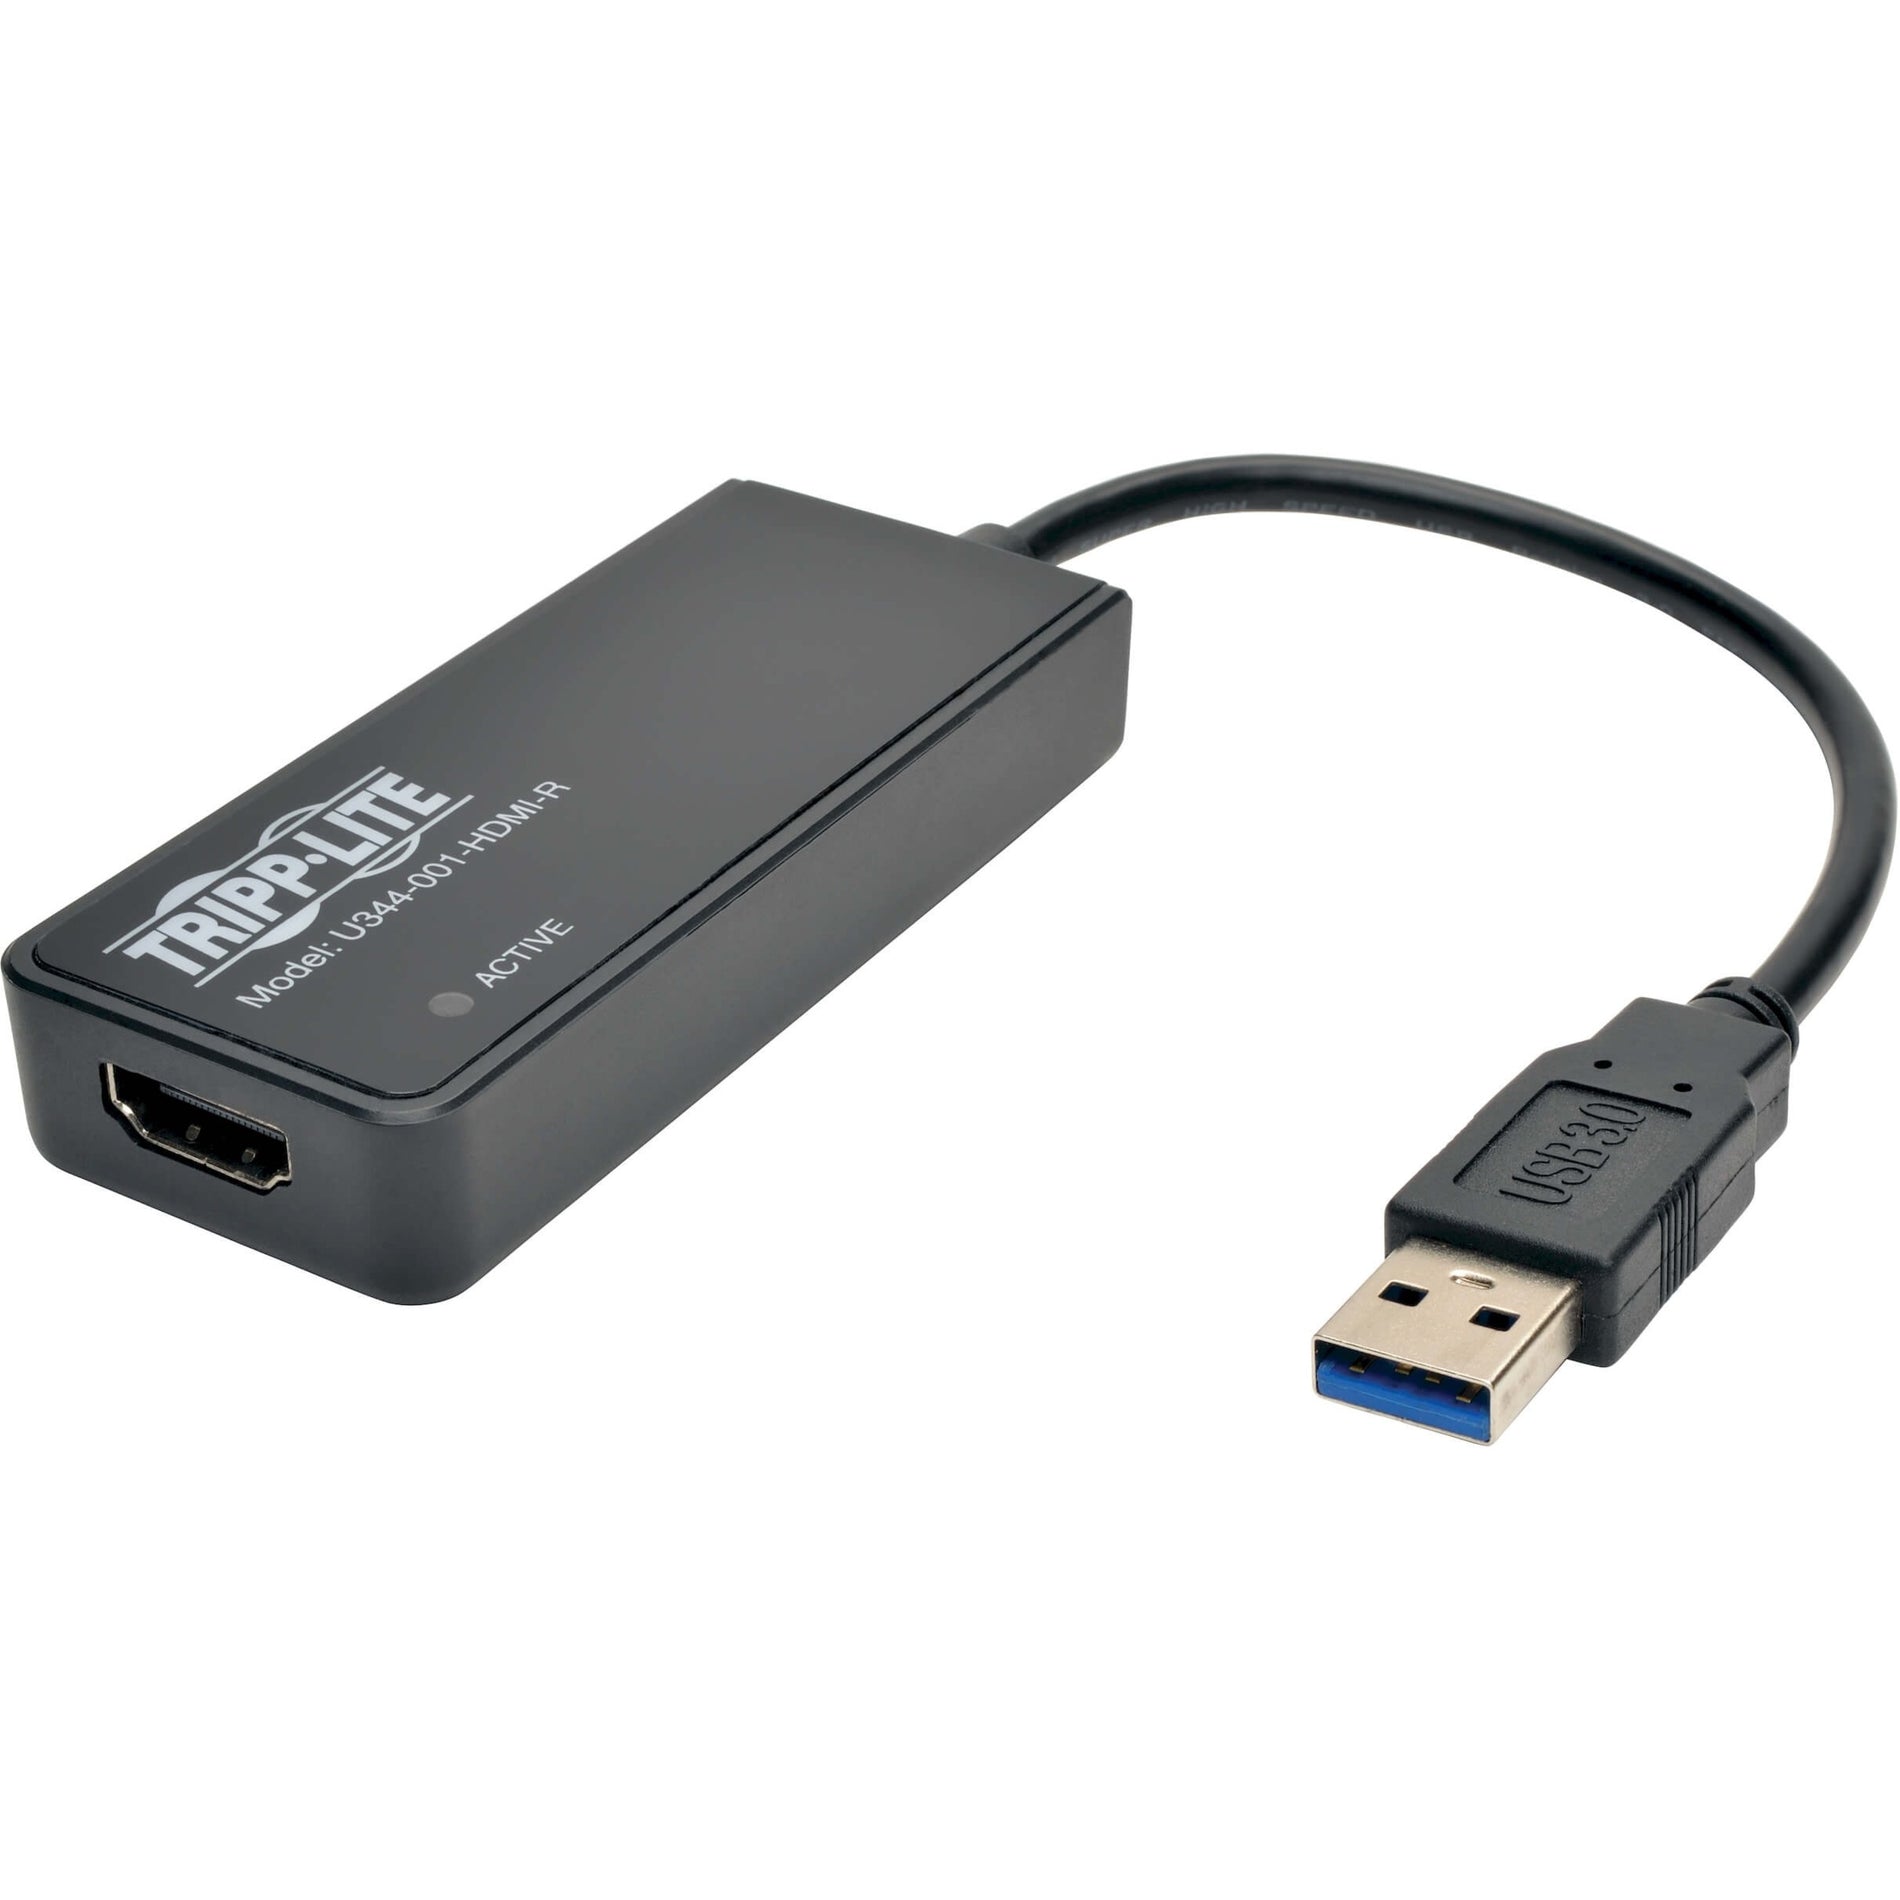 Tripp Lite U344-001-HDMI-R USB 3.0 to HDMI Adapter, 2048 x 1152 Resolution, 3 Year Warranty